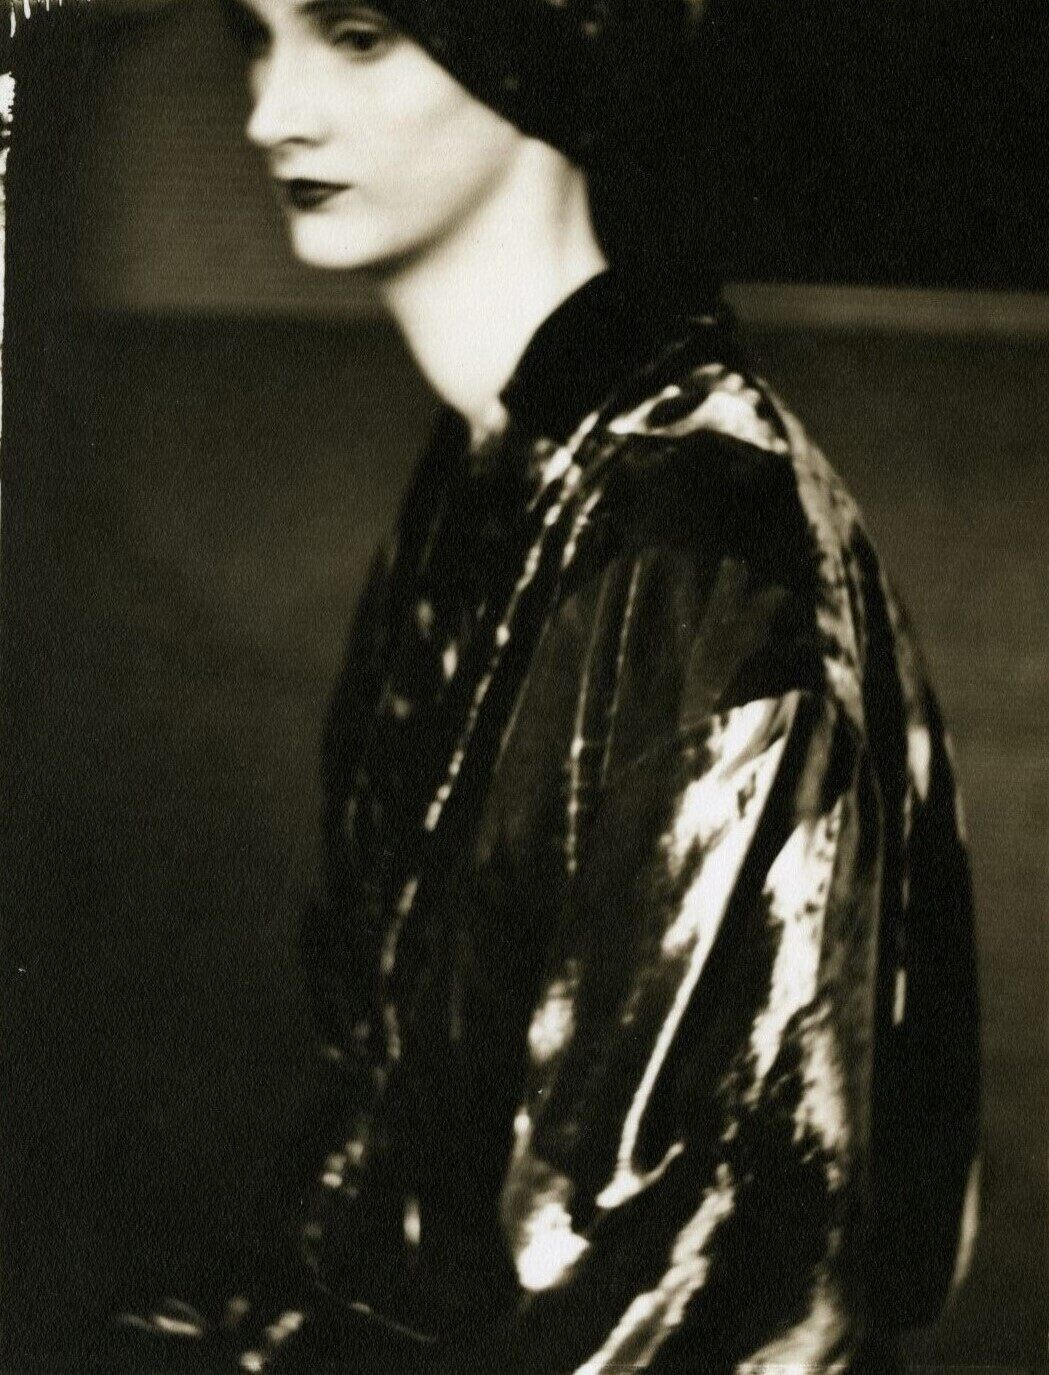 Саша Робертсон в платье Джорджины фон Эцдорф, 1987 год. Фотограф Сара Мун